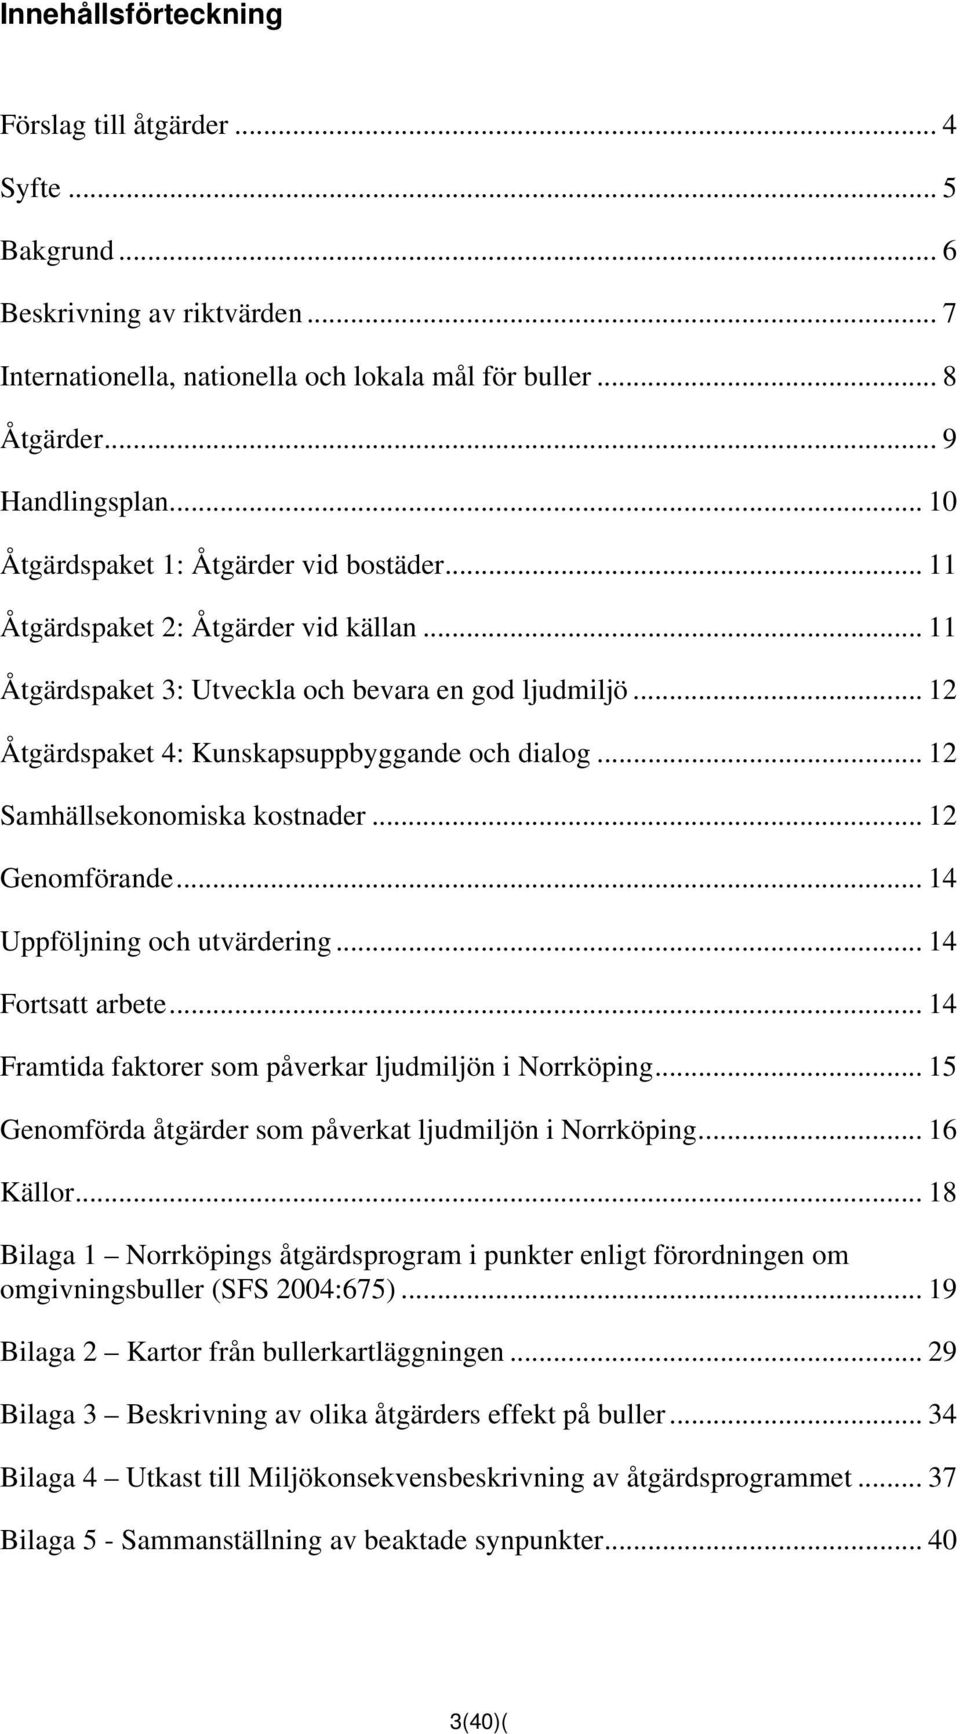 .. 12 Samhällsekonomiska kostnader... 12 Genomförande... 14 Uppföljning och utvärdering... 14 Fortsatt arbete... 14 Framtida faktorer som påverkar ljudmiljön i Norrköping.